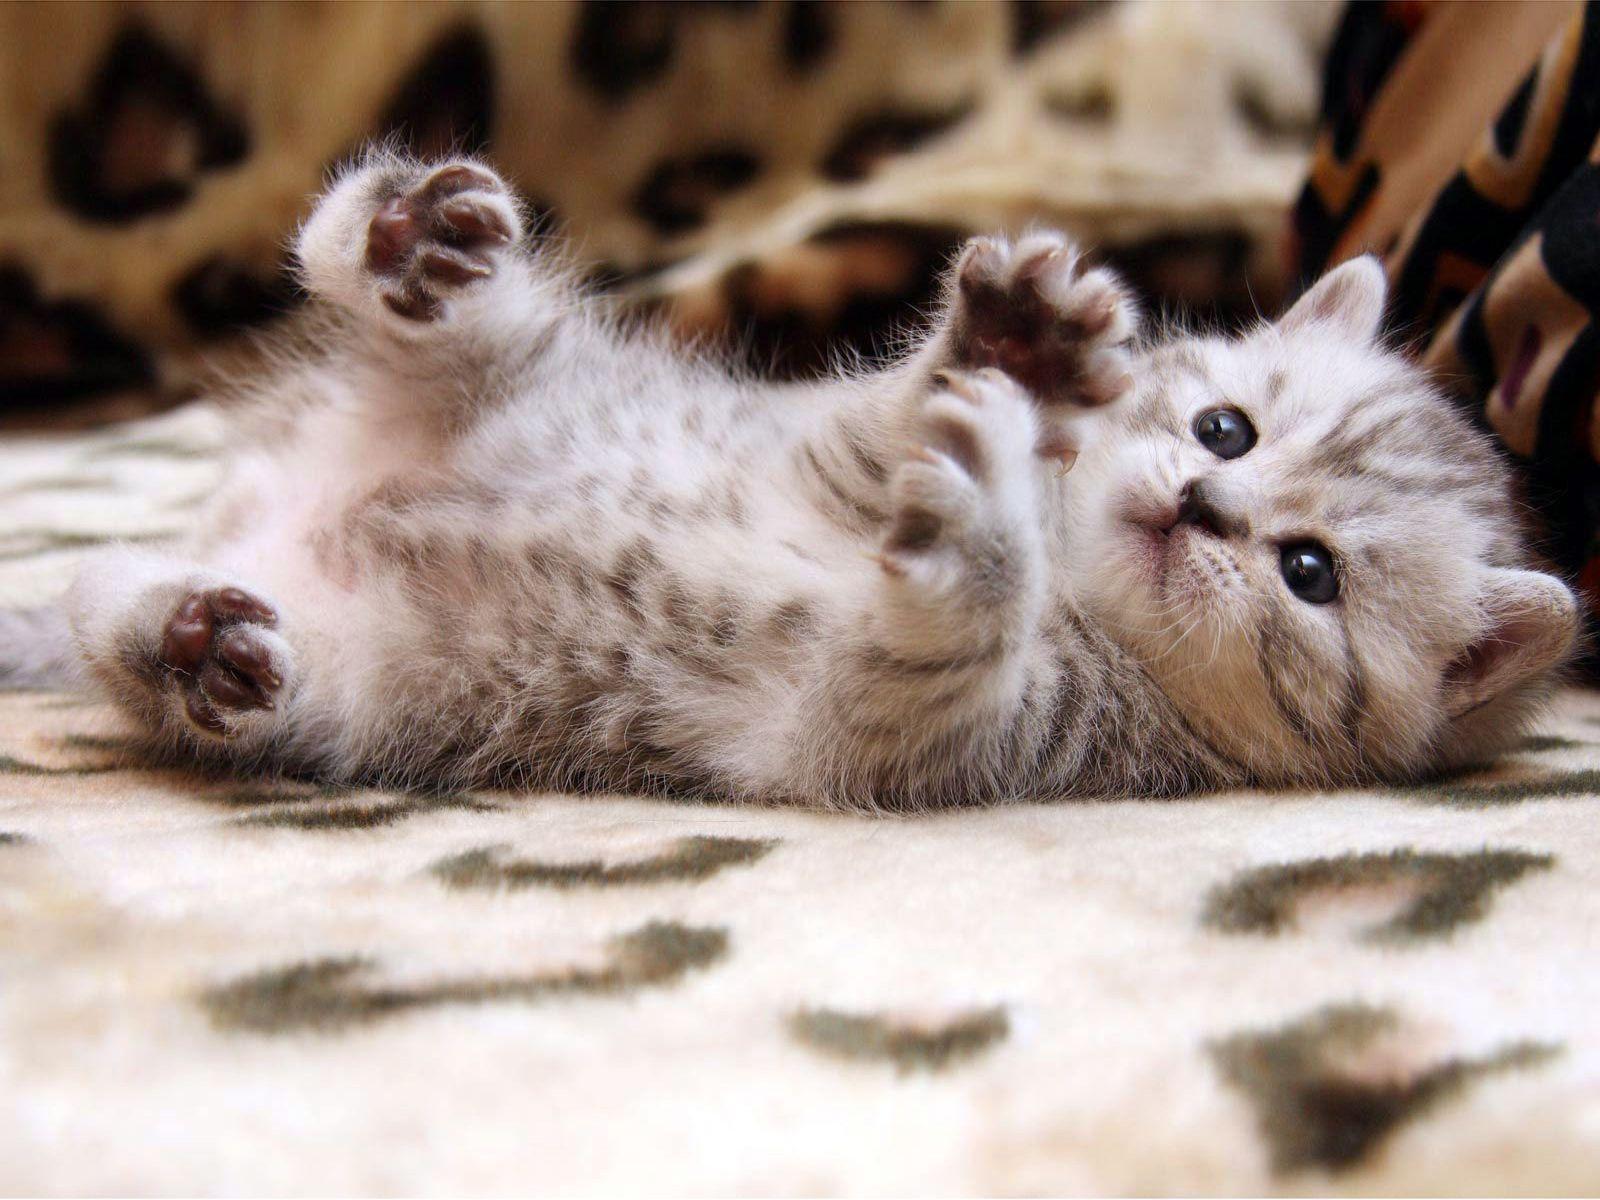 Baby Cute Cat Wallpaper. Free Download Wallpaper